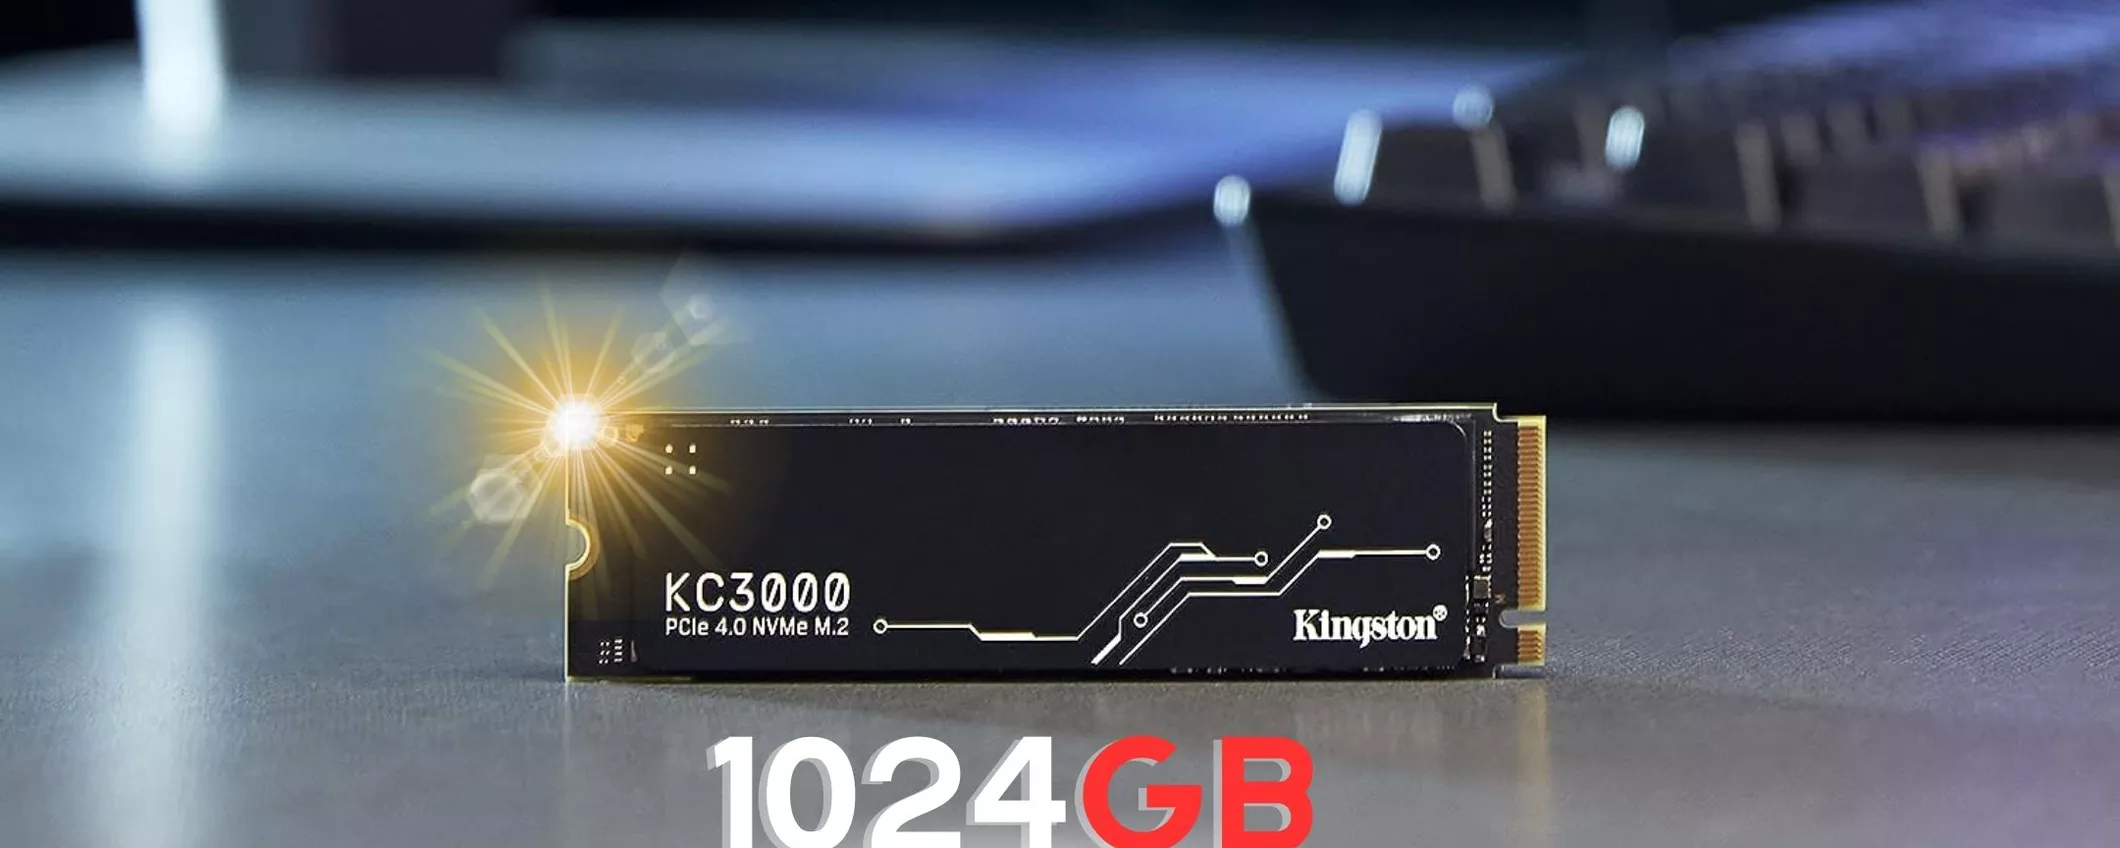 IMPERDIBILE: 1TB di SSD Kingston per il tuo PC al MINIMO STORICO